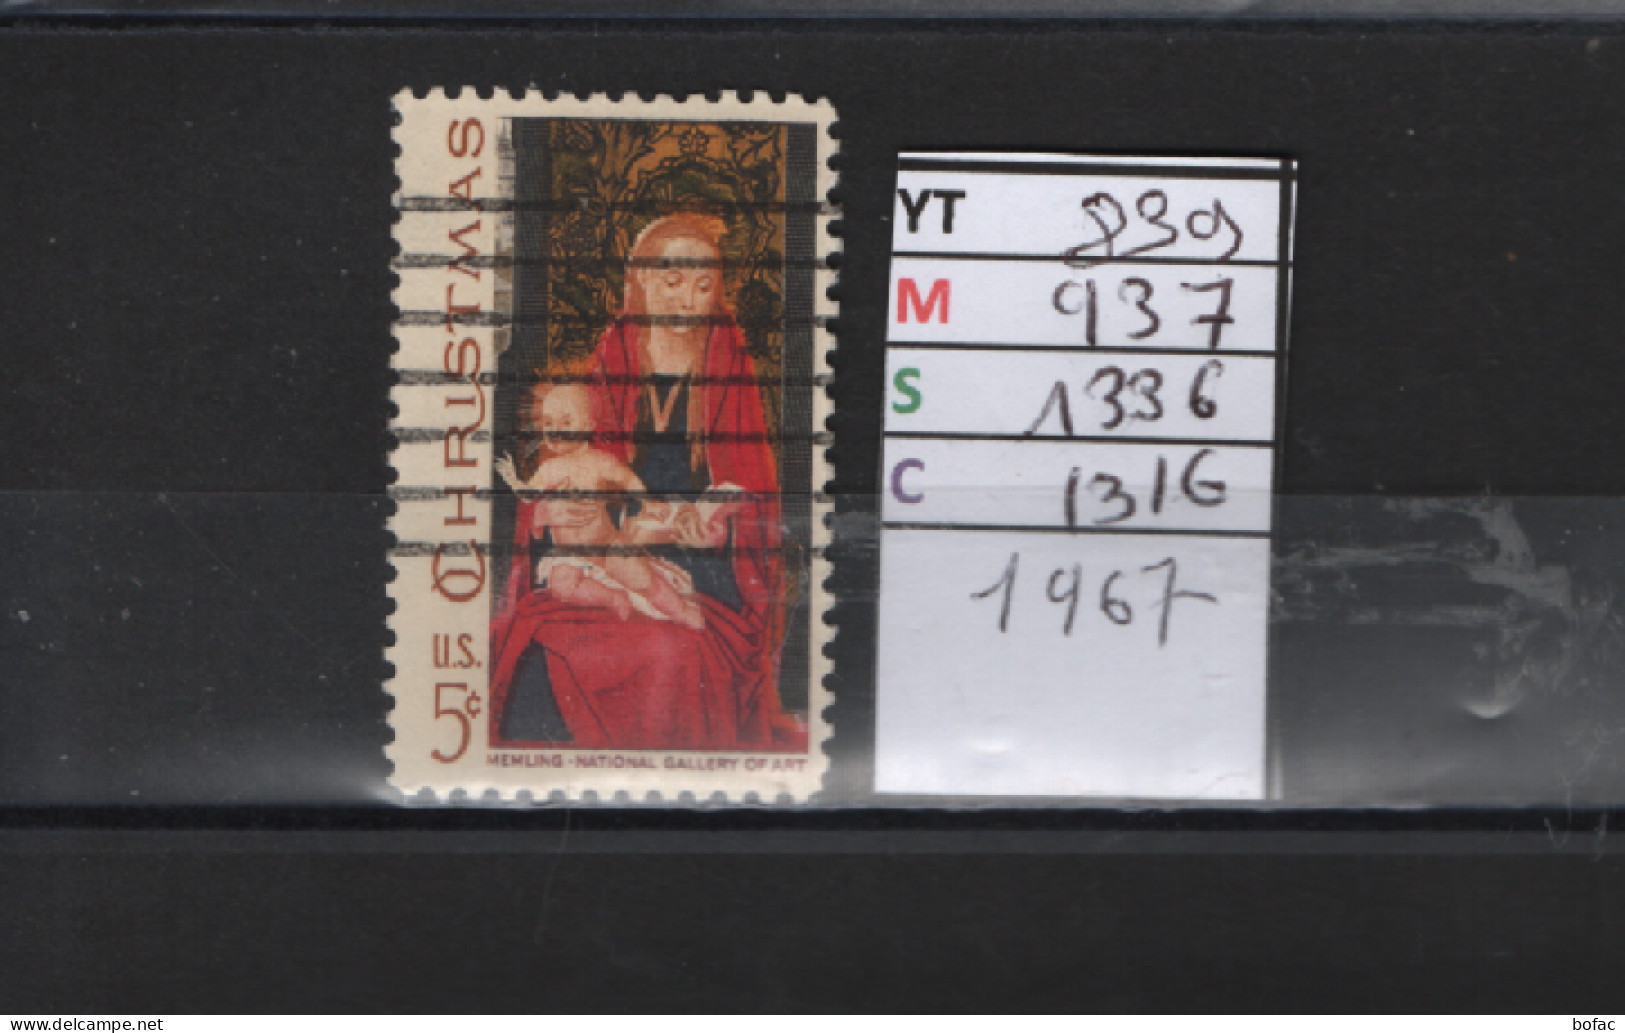 PRIX FIXE Obl  839 YT 937 MIC 1336 SCO 1316 GIB Christmas La Vierge Et L'enfant 1967 Etats Unis  58A/12 - Used Stamps